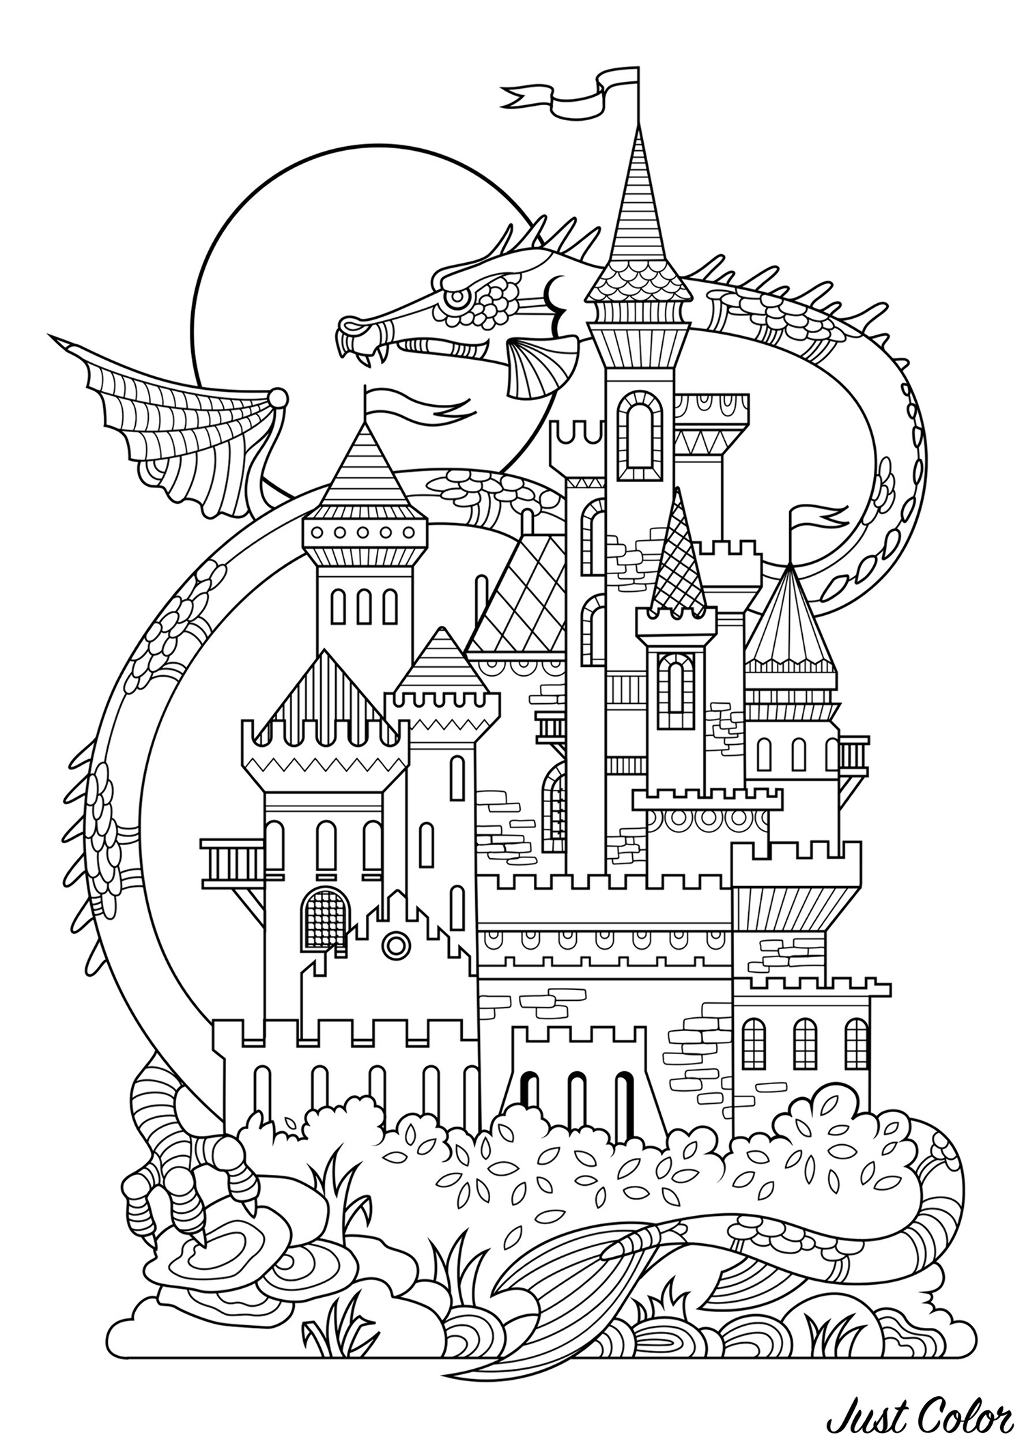 Hübsches Märchenschloss, mit einem riesigen Drachen im Hintergrund!